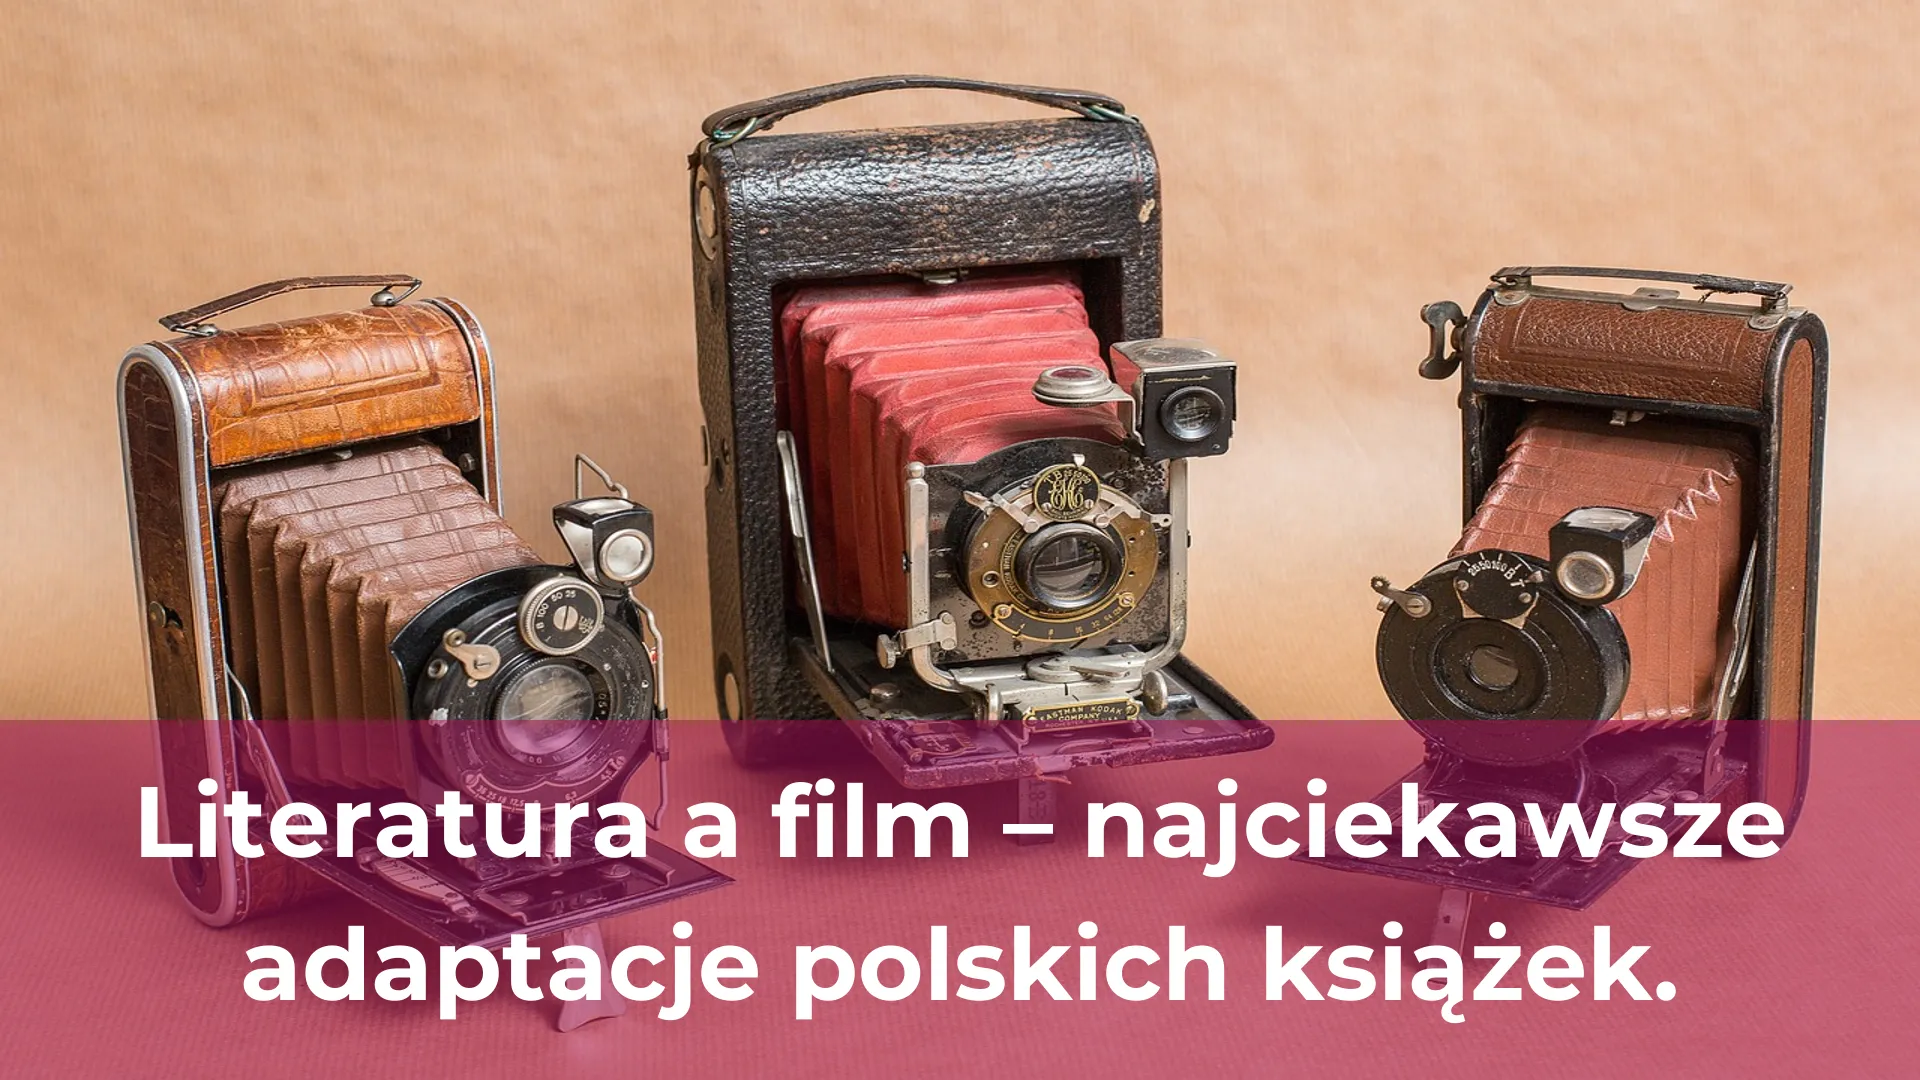 Literatura a film najciekawsze adaptacje polskich książek